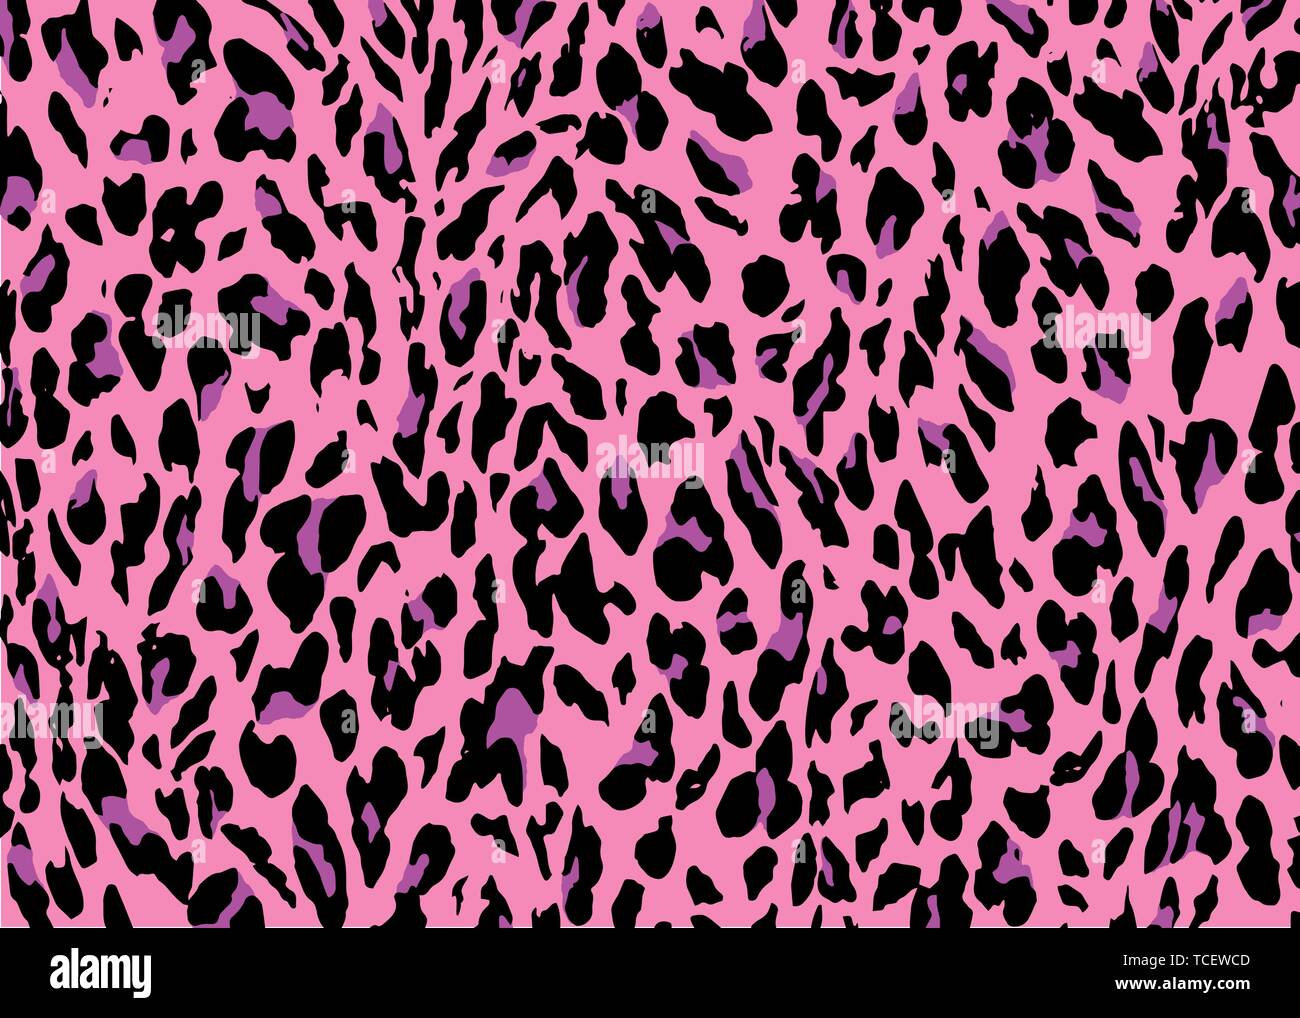 Pink Leopard skin pattern design. Leopard print vector illustration background. Wildlife fur skin design illustration for print, web, home decor, Stock Vector